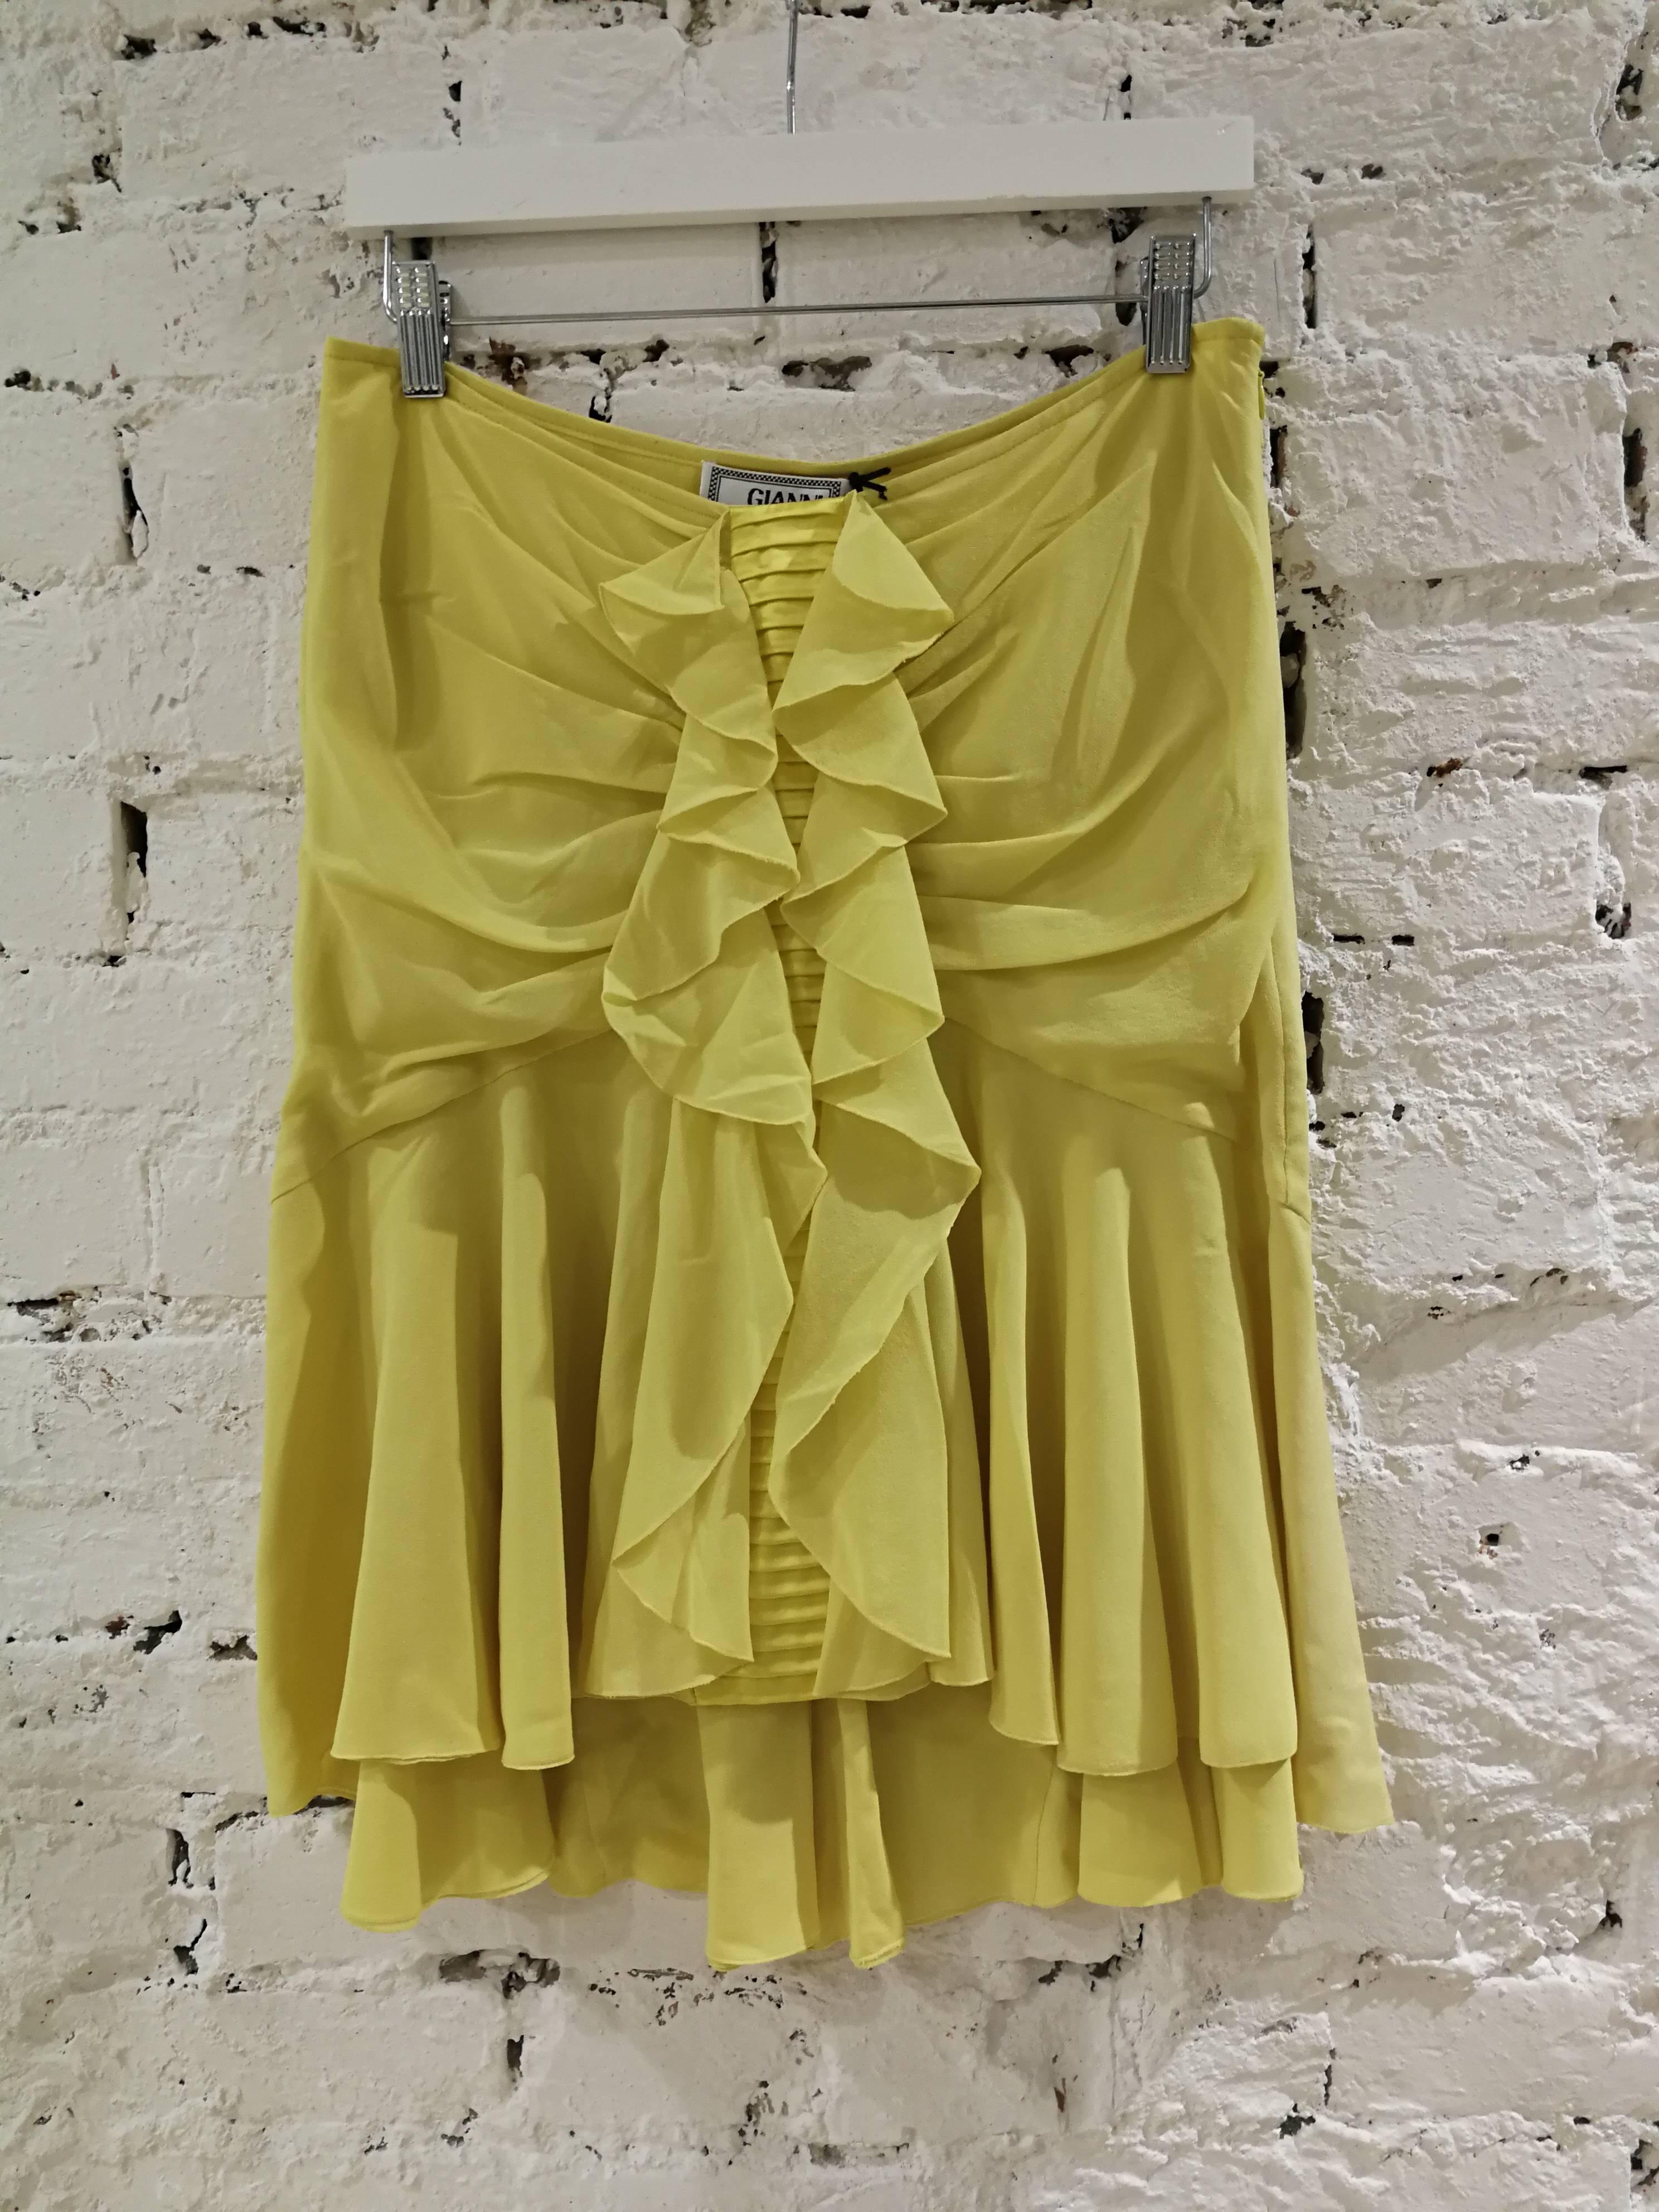 Gianni Versace Yellow Silk Skirt NWOT 1